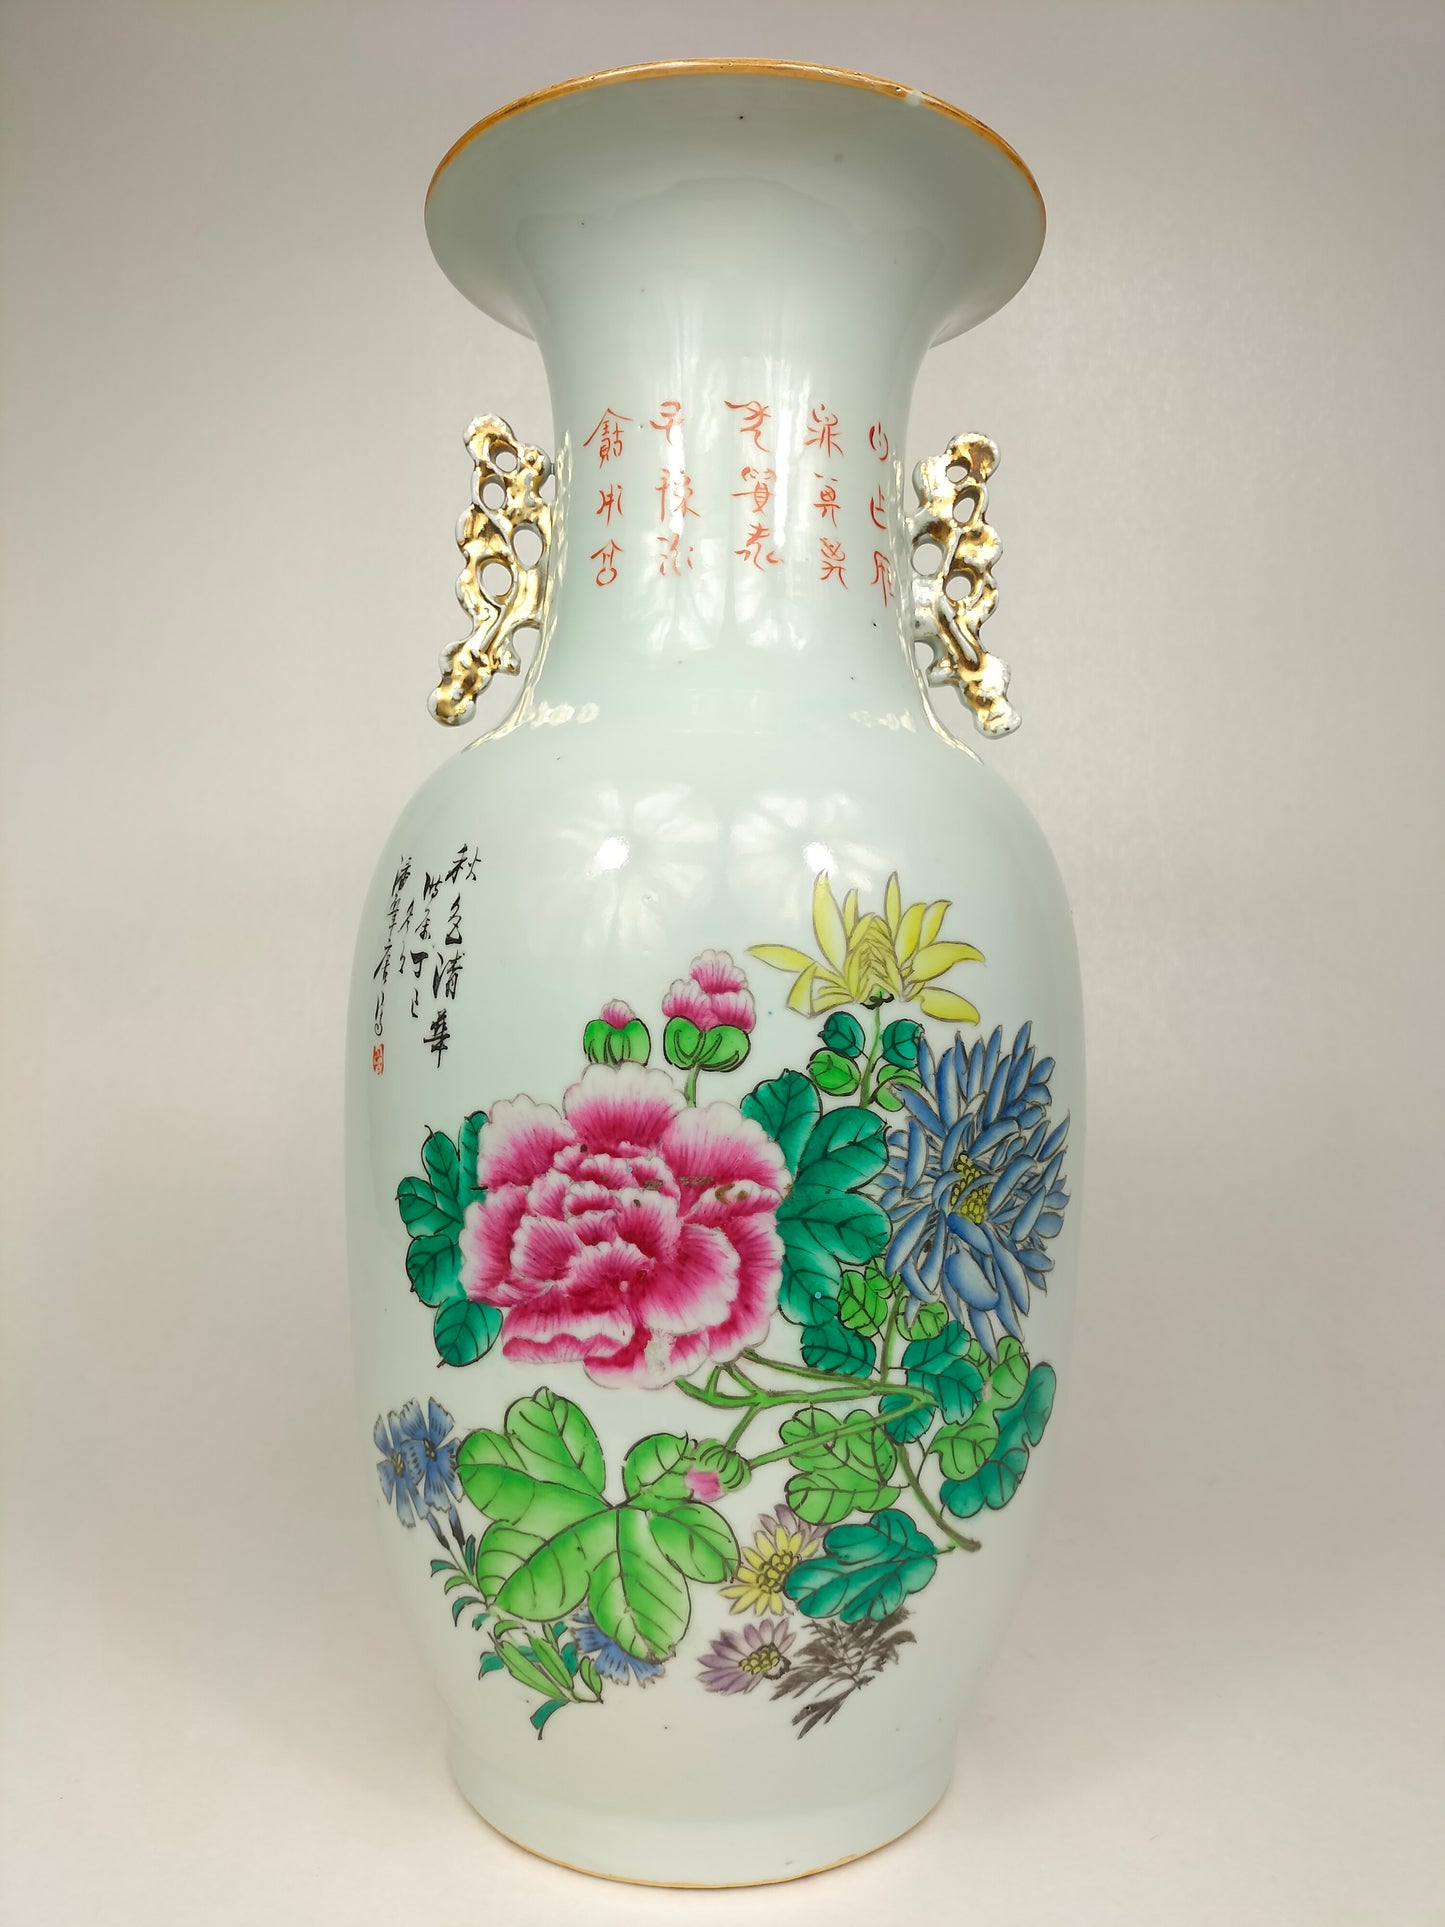 Pasu Cina antik dihiasi dengan bijak dan bunga // Artis ditandatangani - Tempoh Republik (1912-1949)